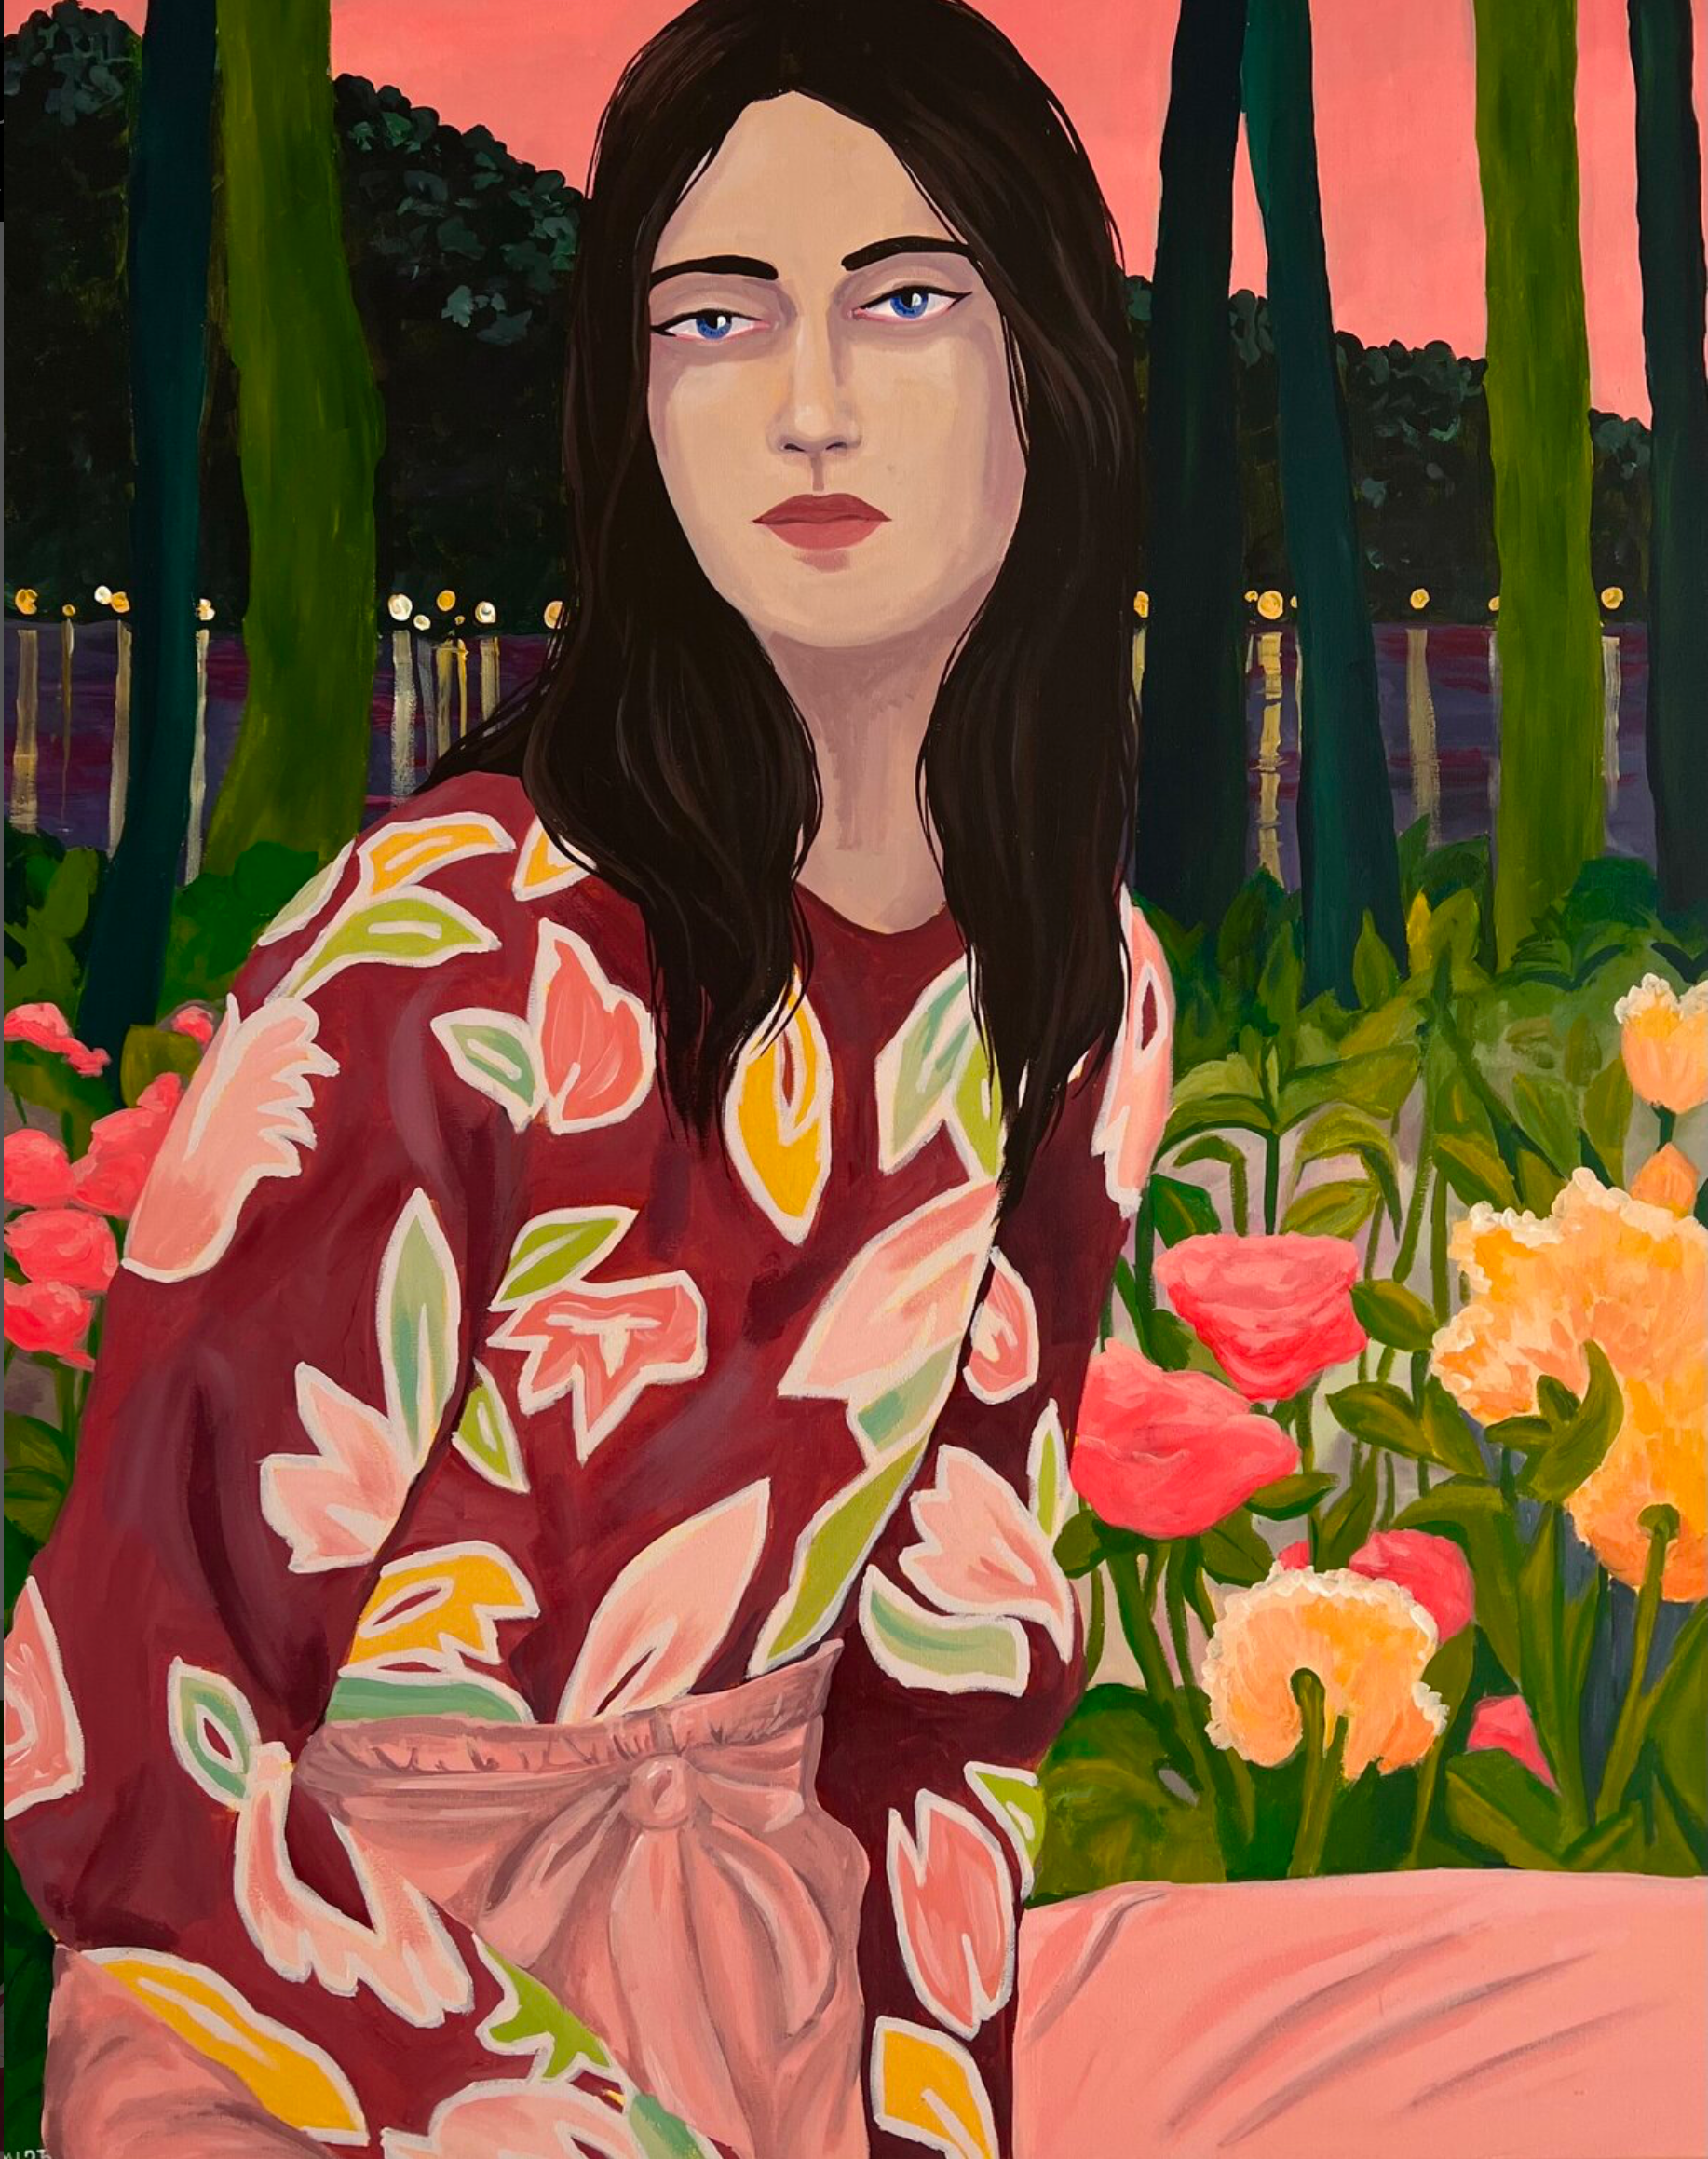 Vanessa van Meerhaeghe ist eine in Brüssel ansässige Malerin. Ihr Frauenporträt Gemälde "Flowerlit grace"  ist elegant und farbenfroh; sie liebt es, mit kühnen Mustern zu arbeiten.